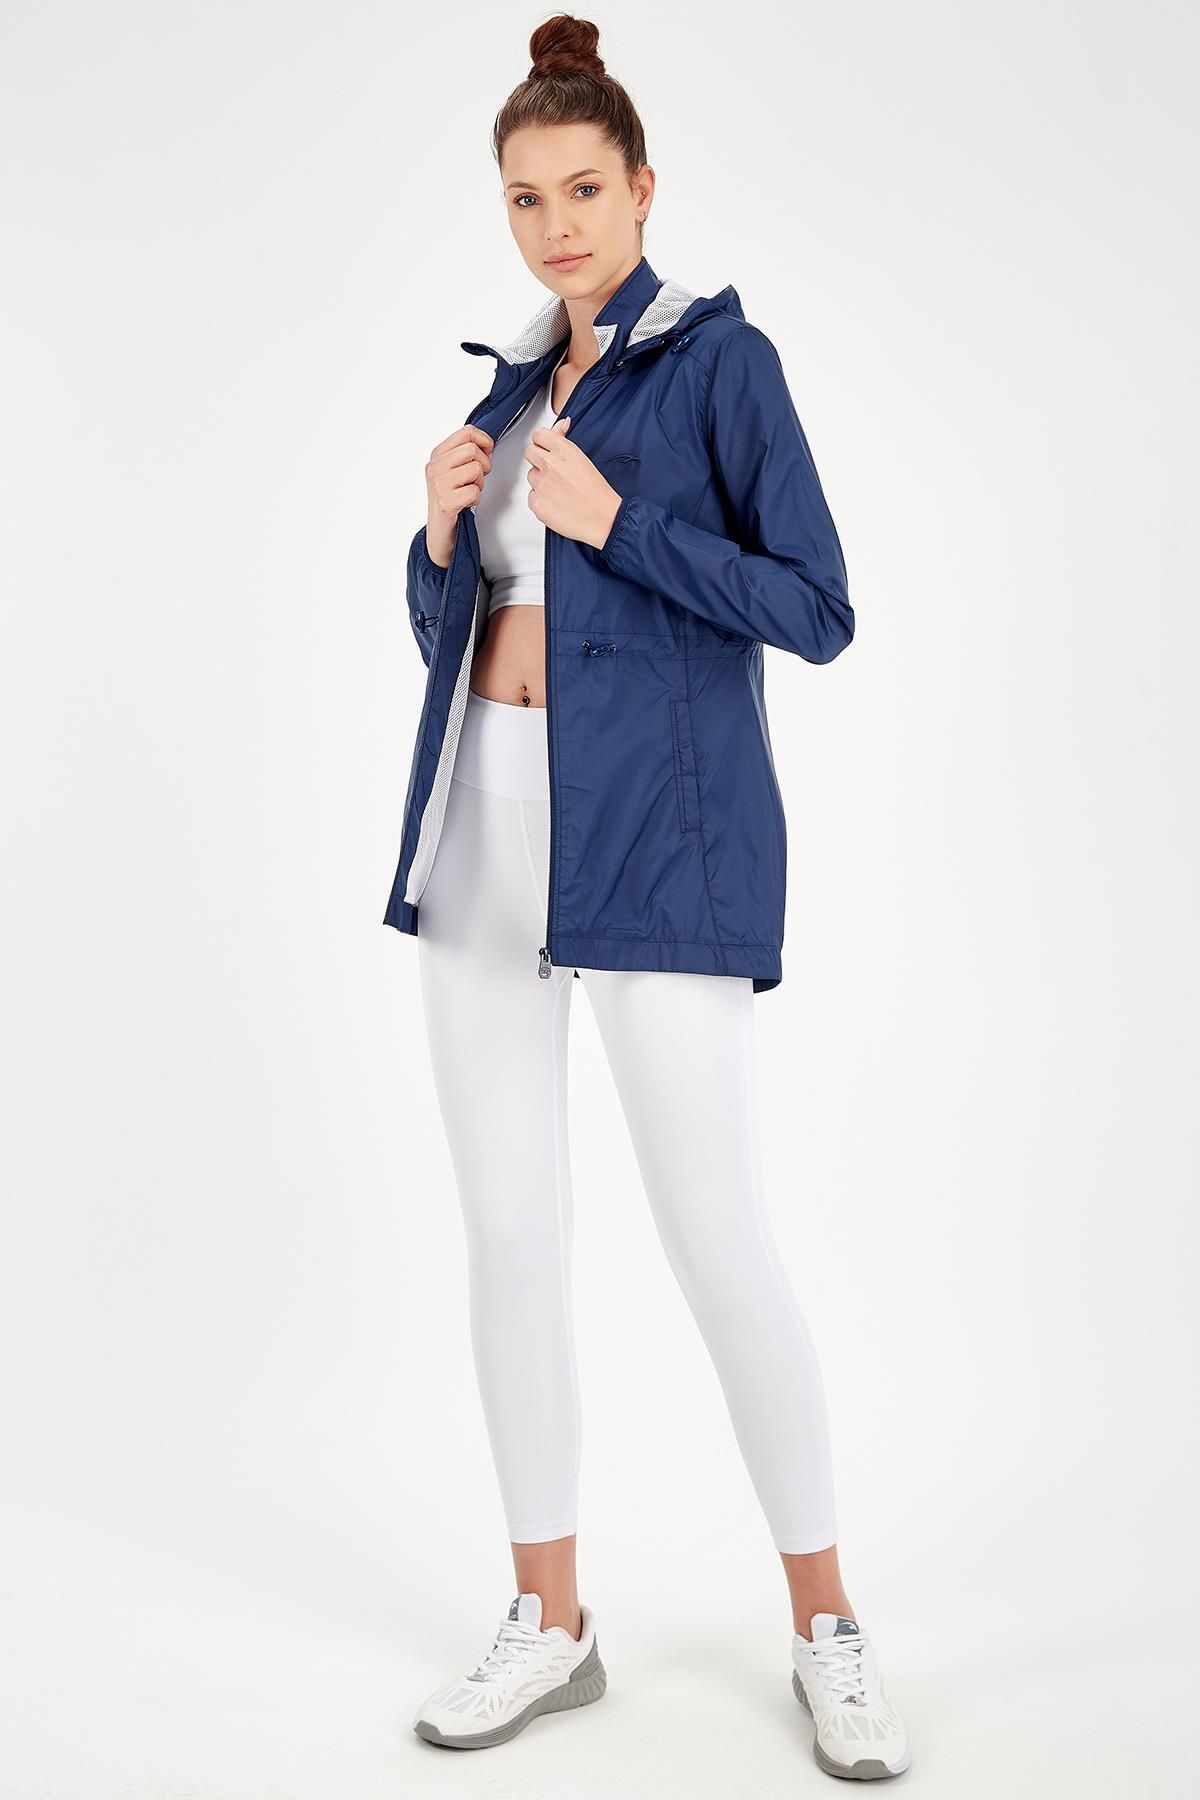 MARATON Sportswear Slimfit Kadın Kapşonlu Uzun Kol Outdoor Yağmurluk 16972